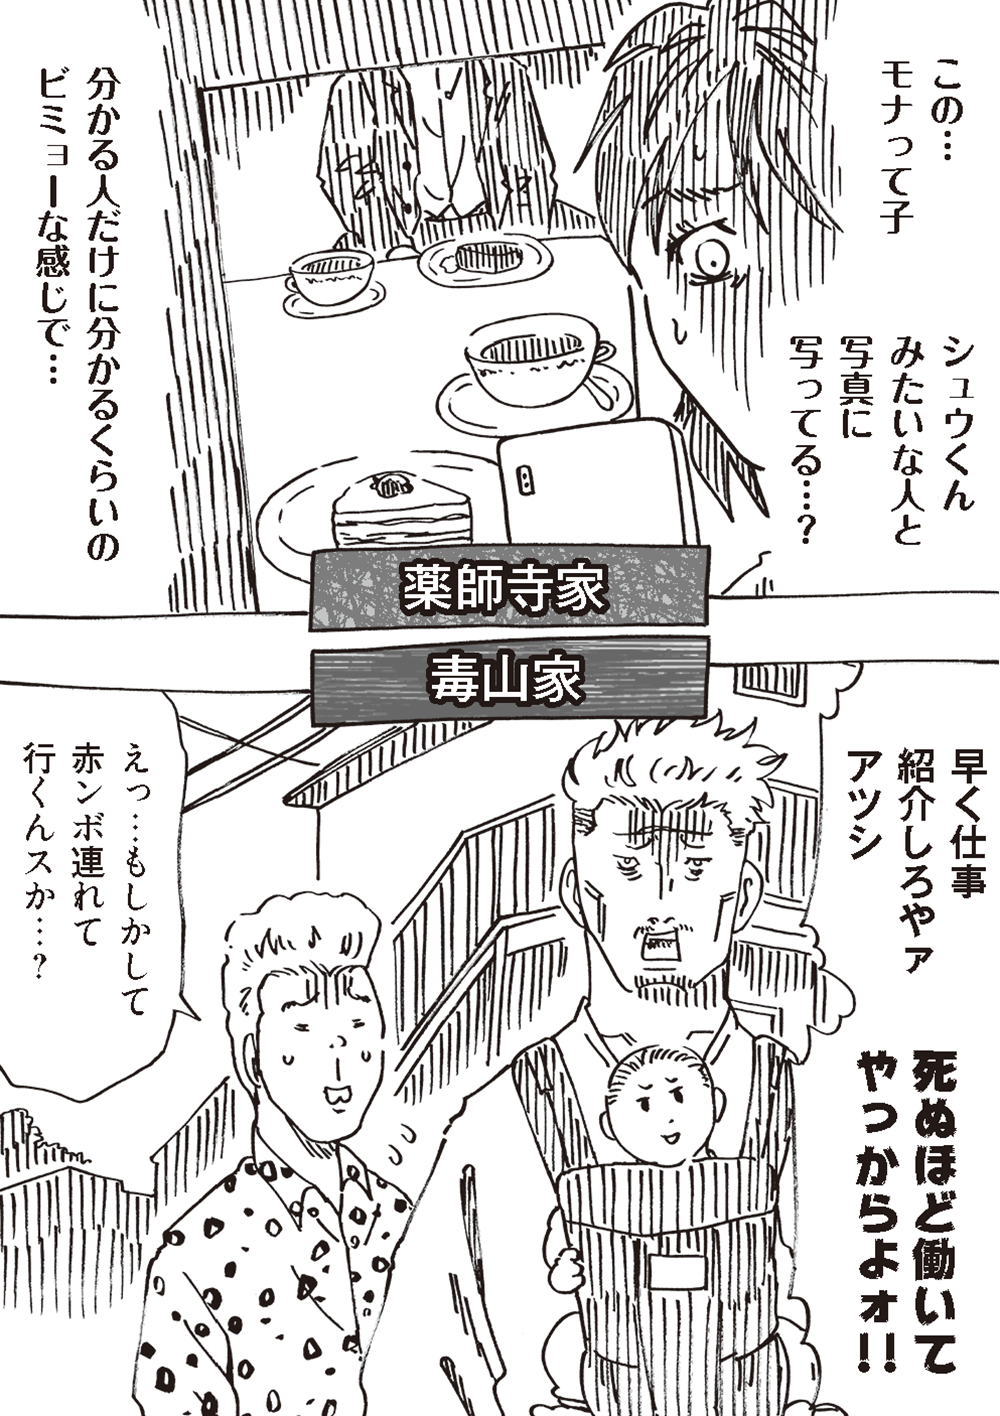 「匂わせ女？」 夫に送られたSNSメッセージ。「縦読み」すると...／どちらかの家庭が崩壊する漫画 oomisoka_houkai_nyukou_041.png